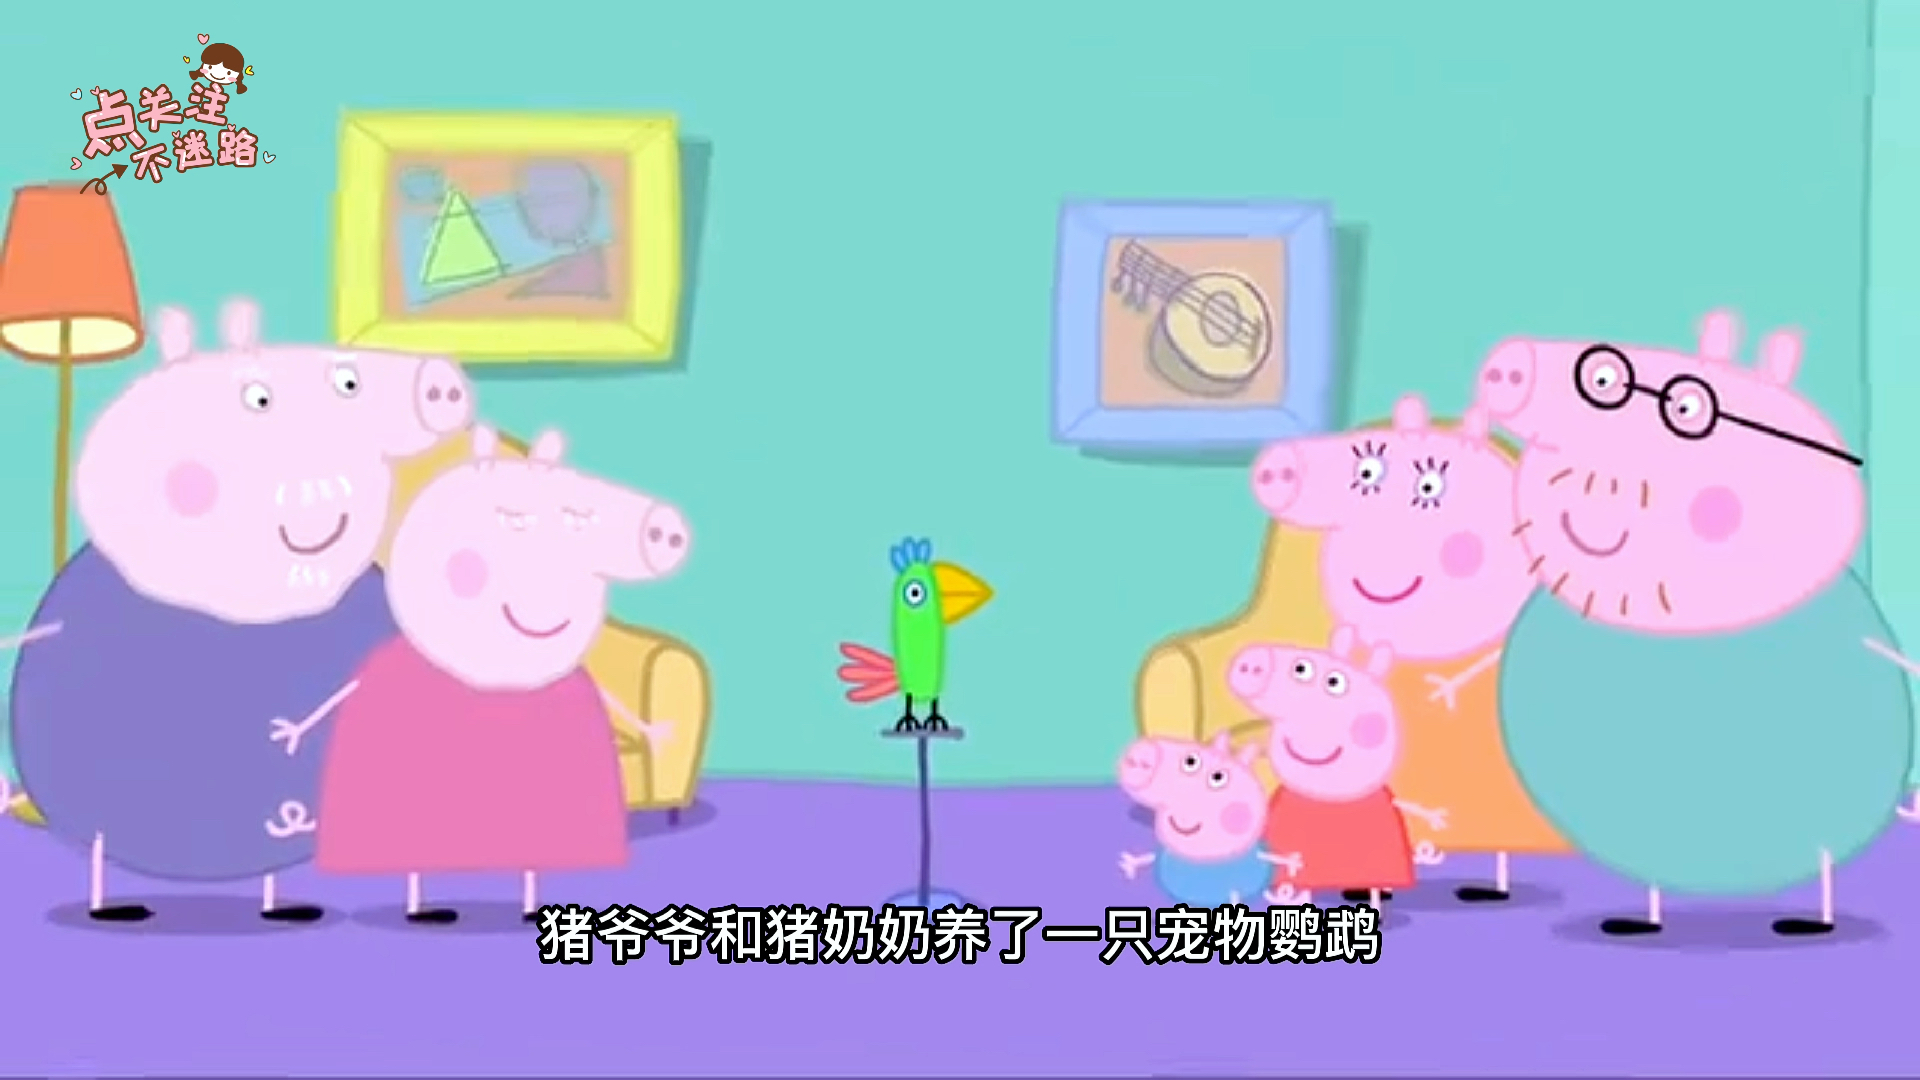 “小朋友玩具”之早教视频:小猪佩奇小故事